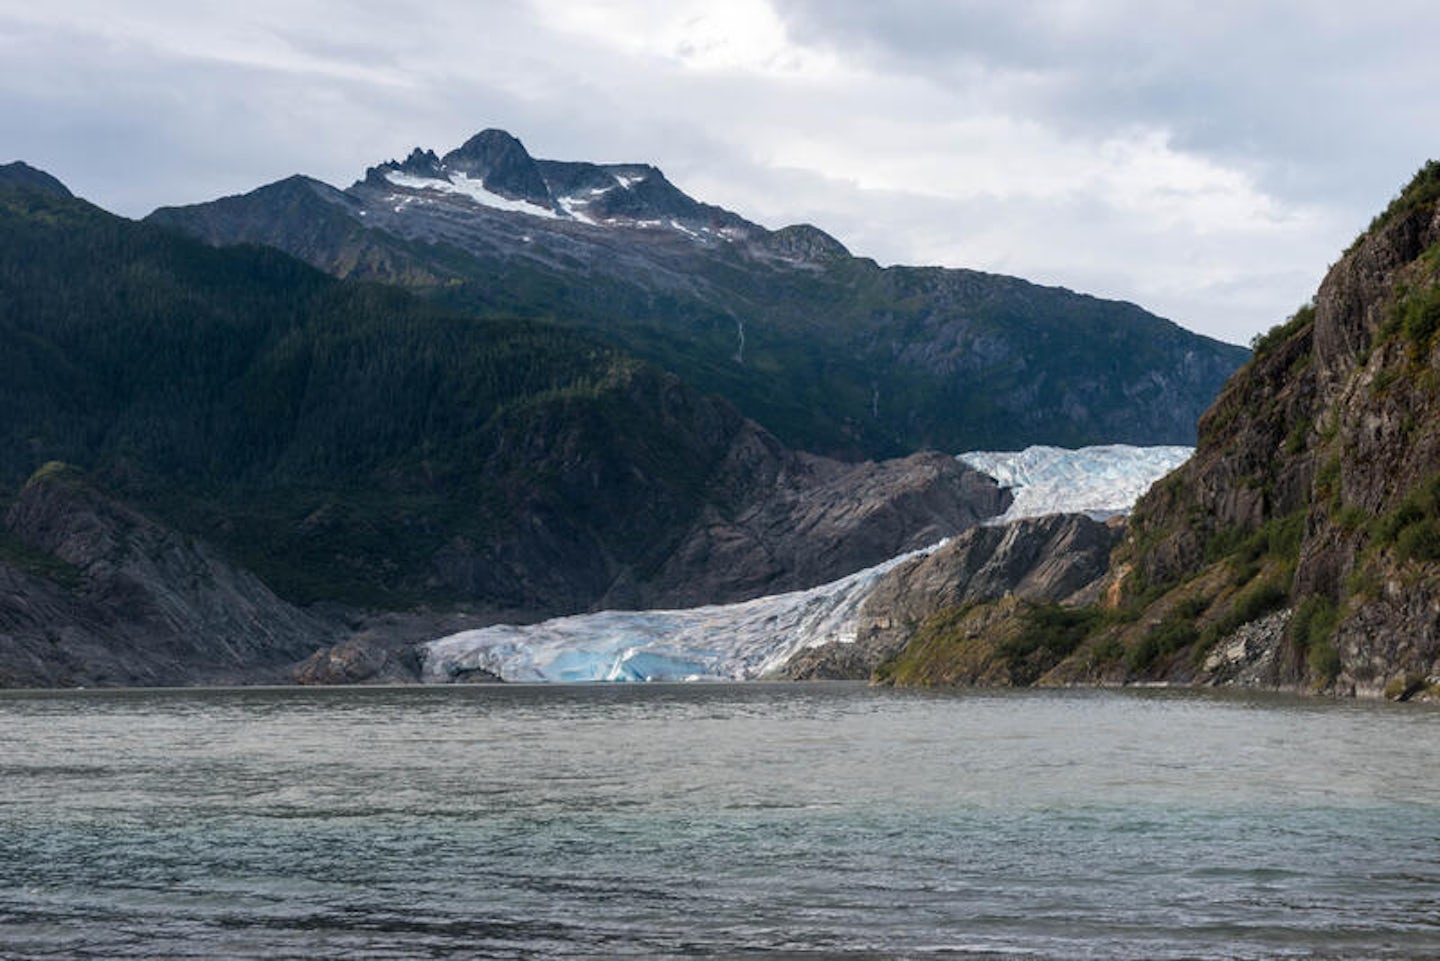 Mendenhall Glacier Park in Juneau, Alaska